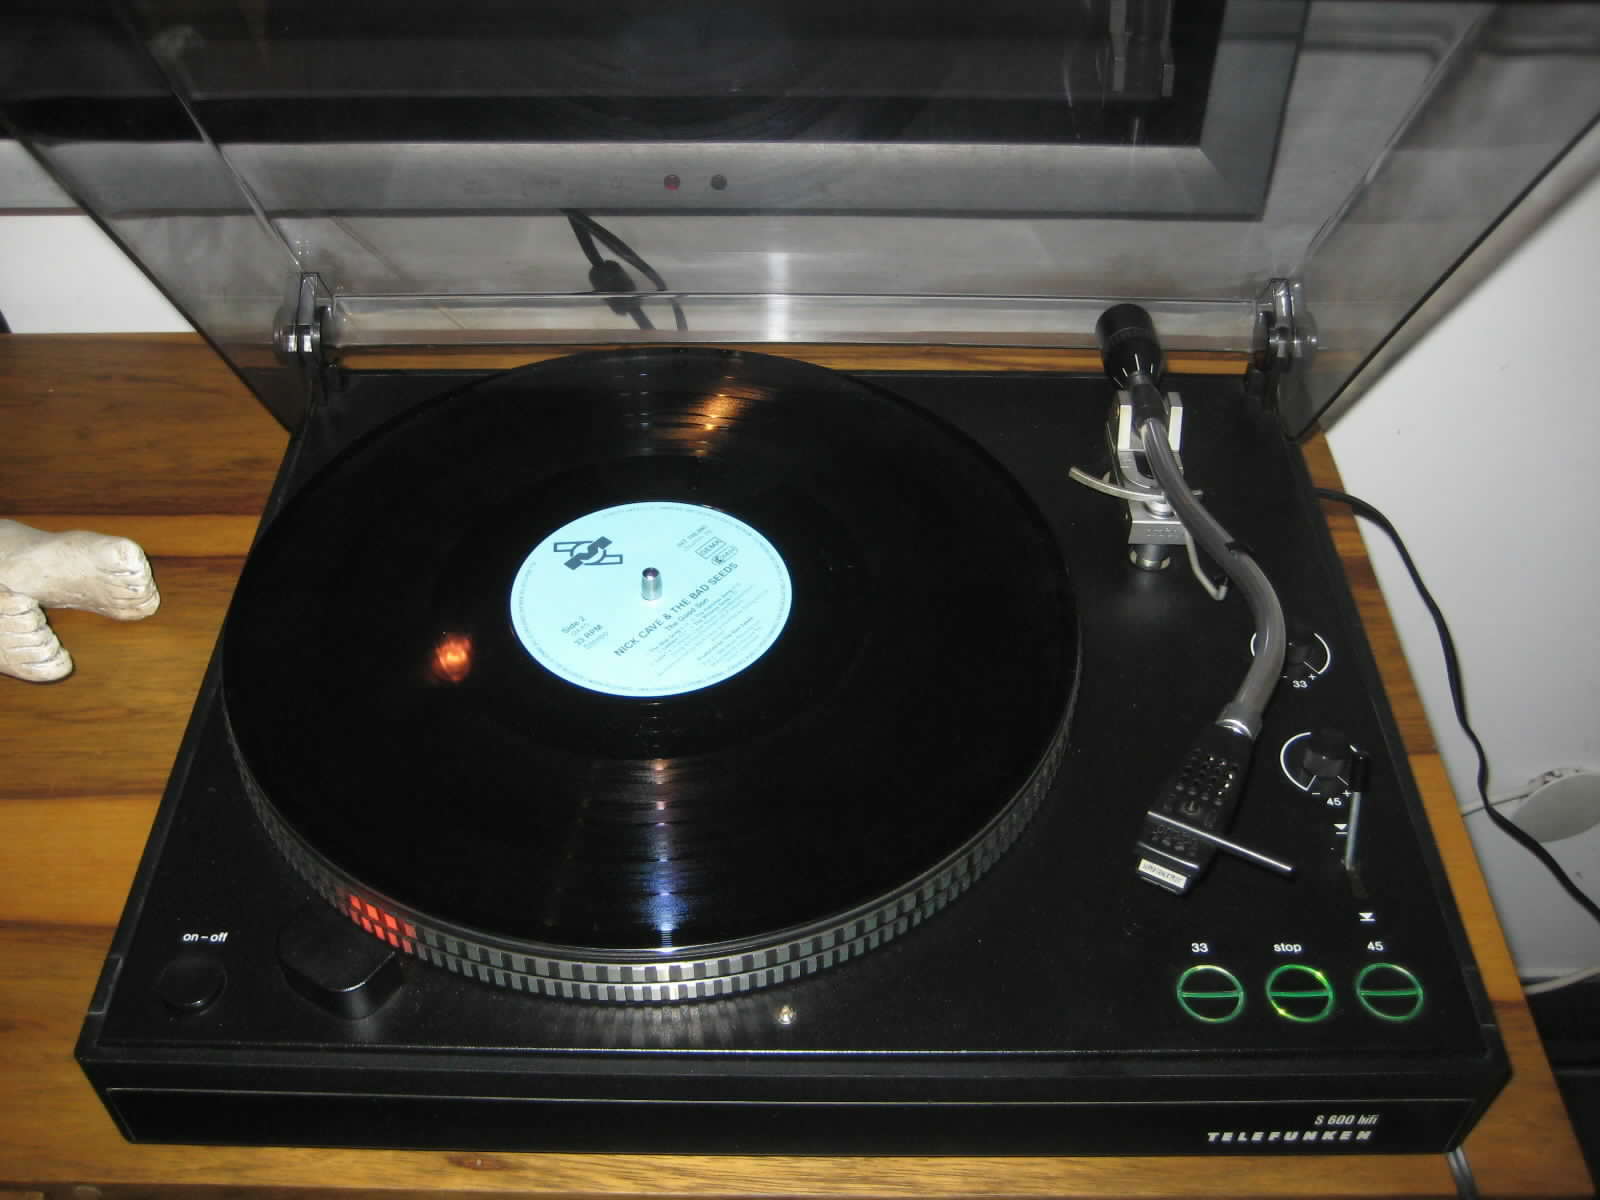 Telefunken S500 S600 turn table plattenspieler Laufwerk Ortofon tone arm tonarm